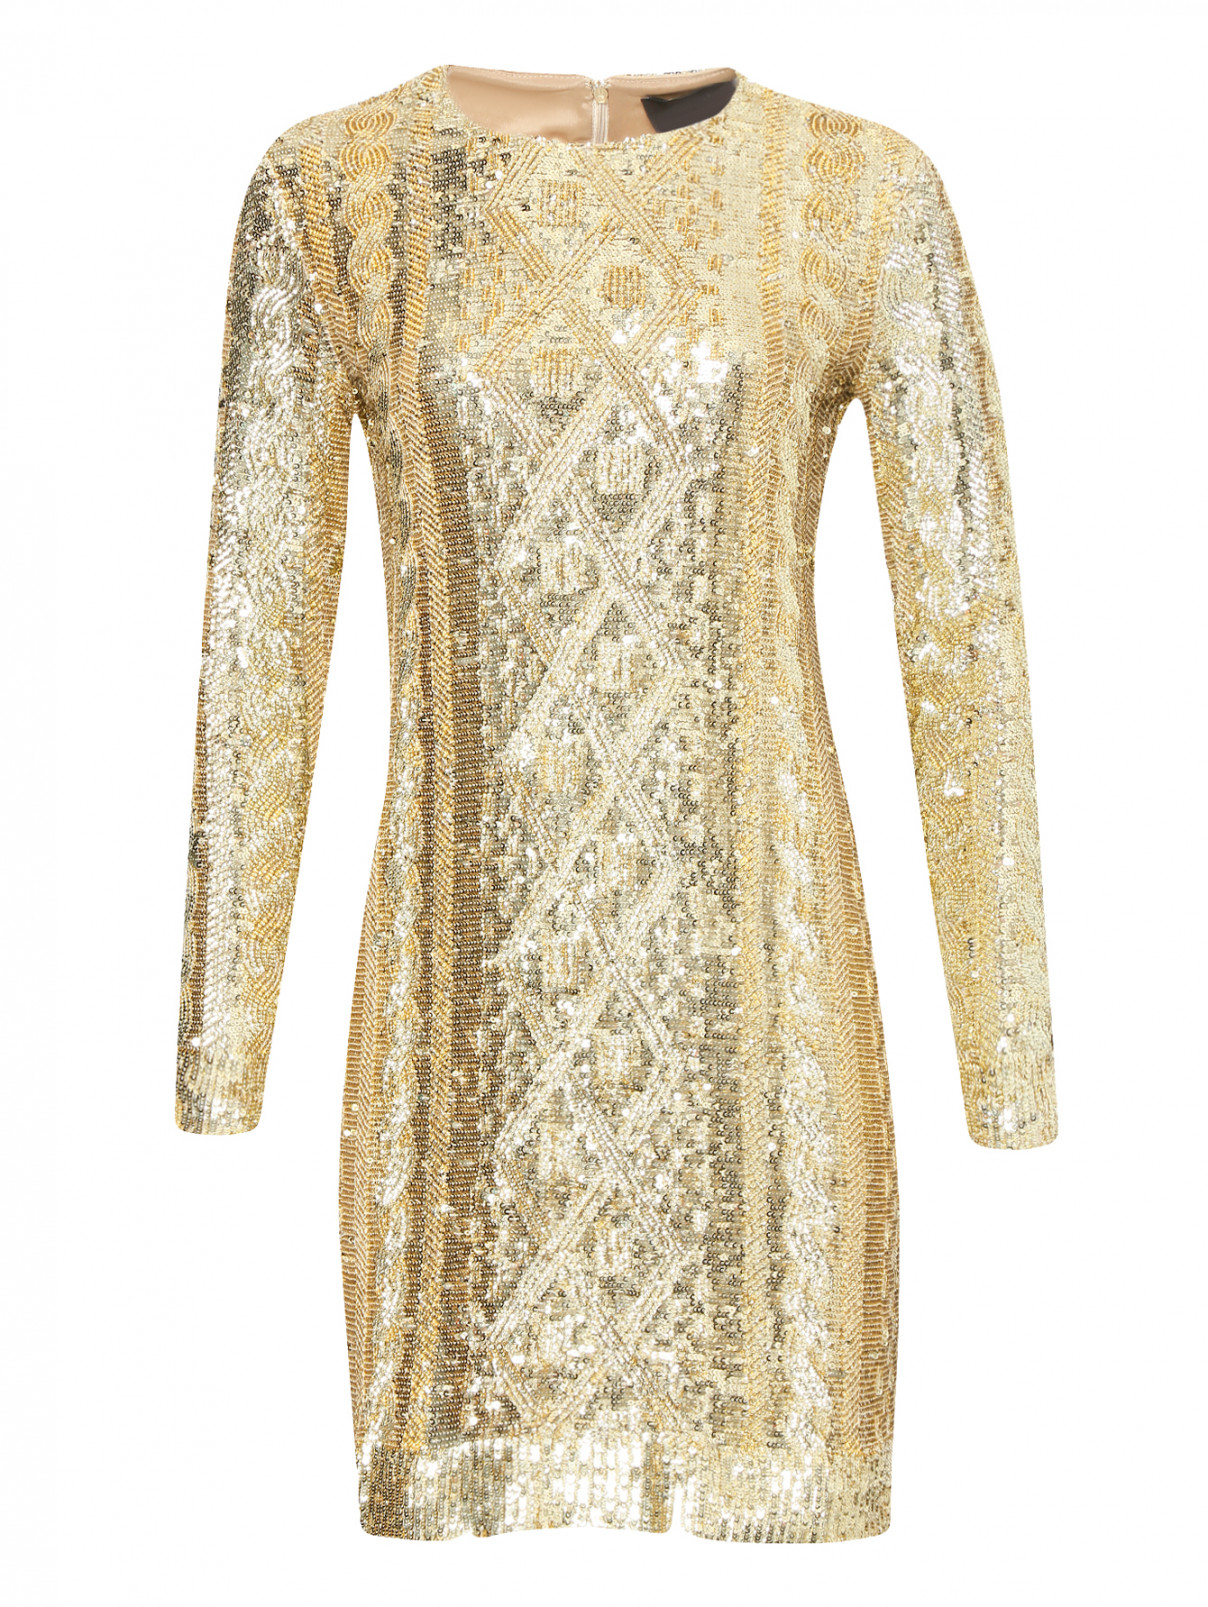 Платье декорированное пайетками Max Mara  –  Общий вид  – Цвет:  Золотой